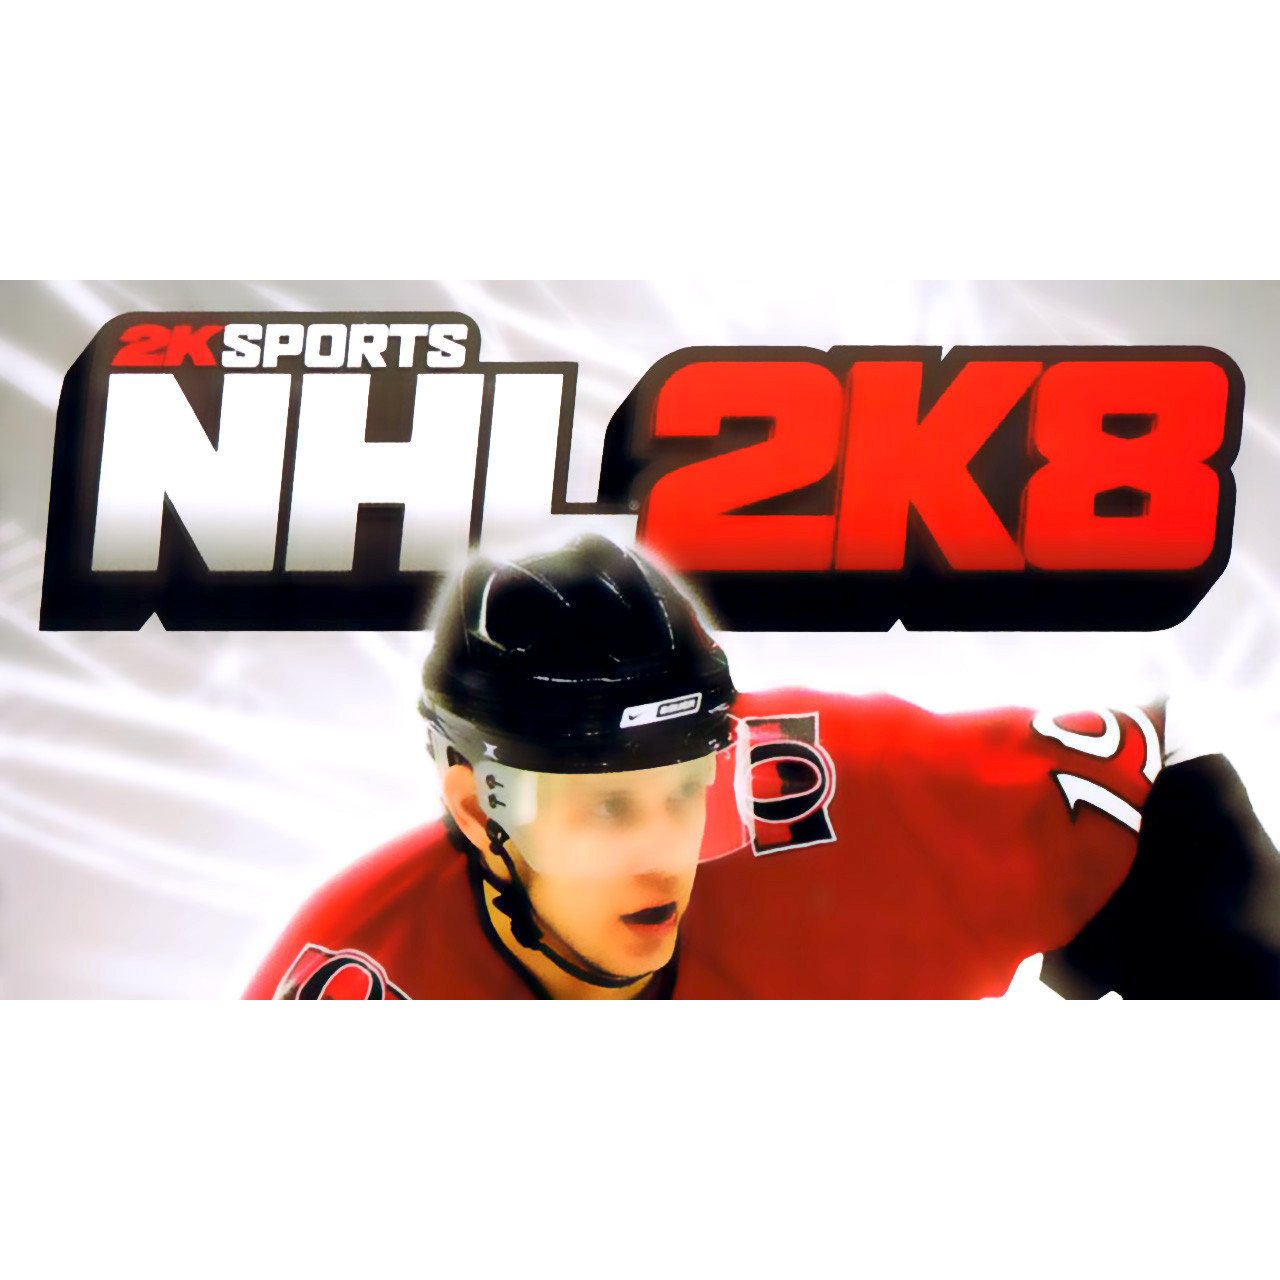 NHL 2K8 Sony PlayStation 2 Game